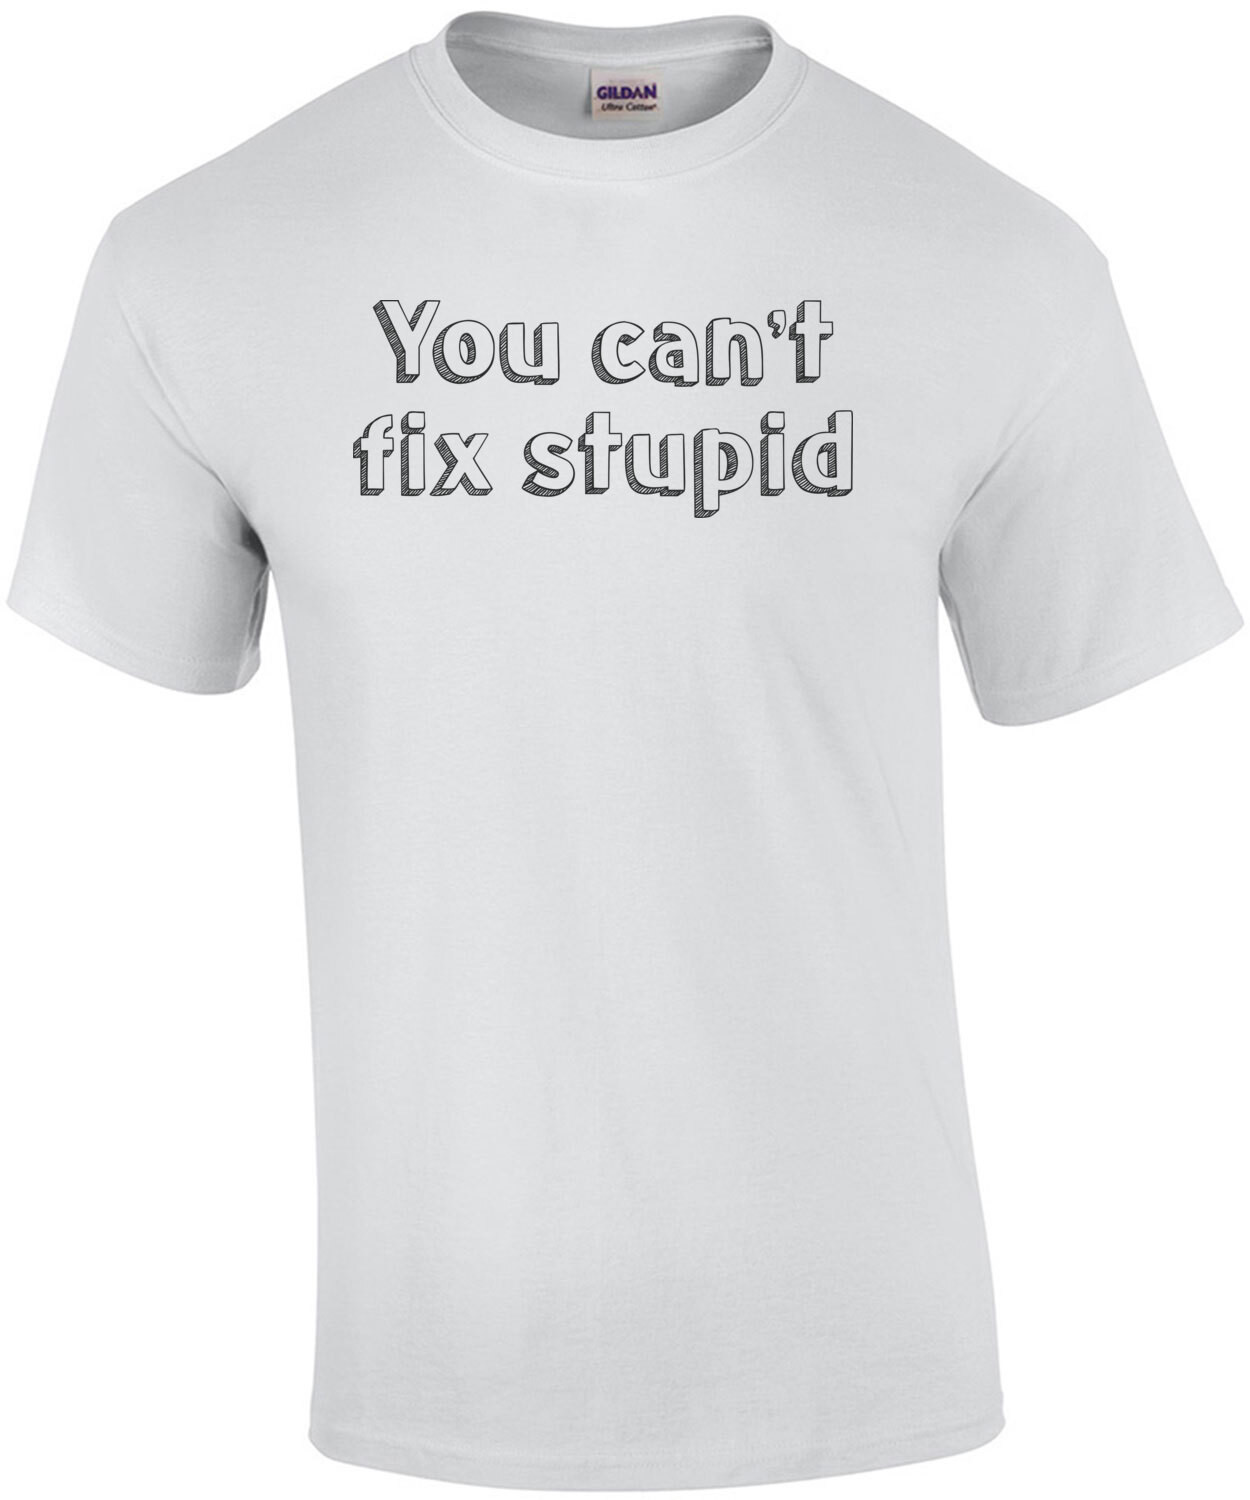 can't fix stupid T-Shirt